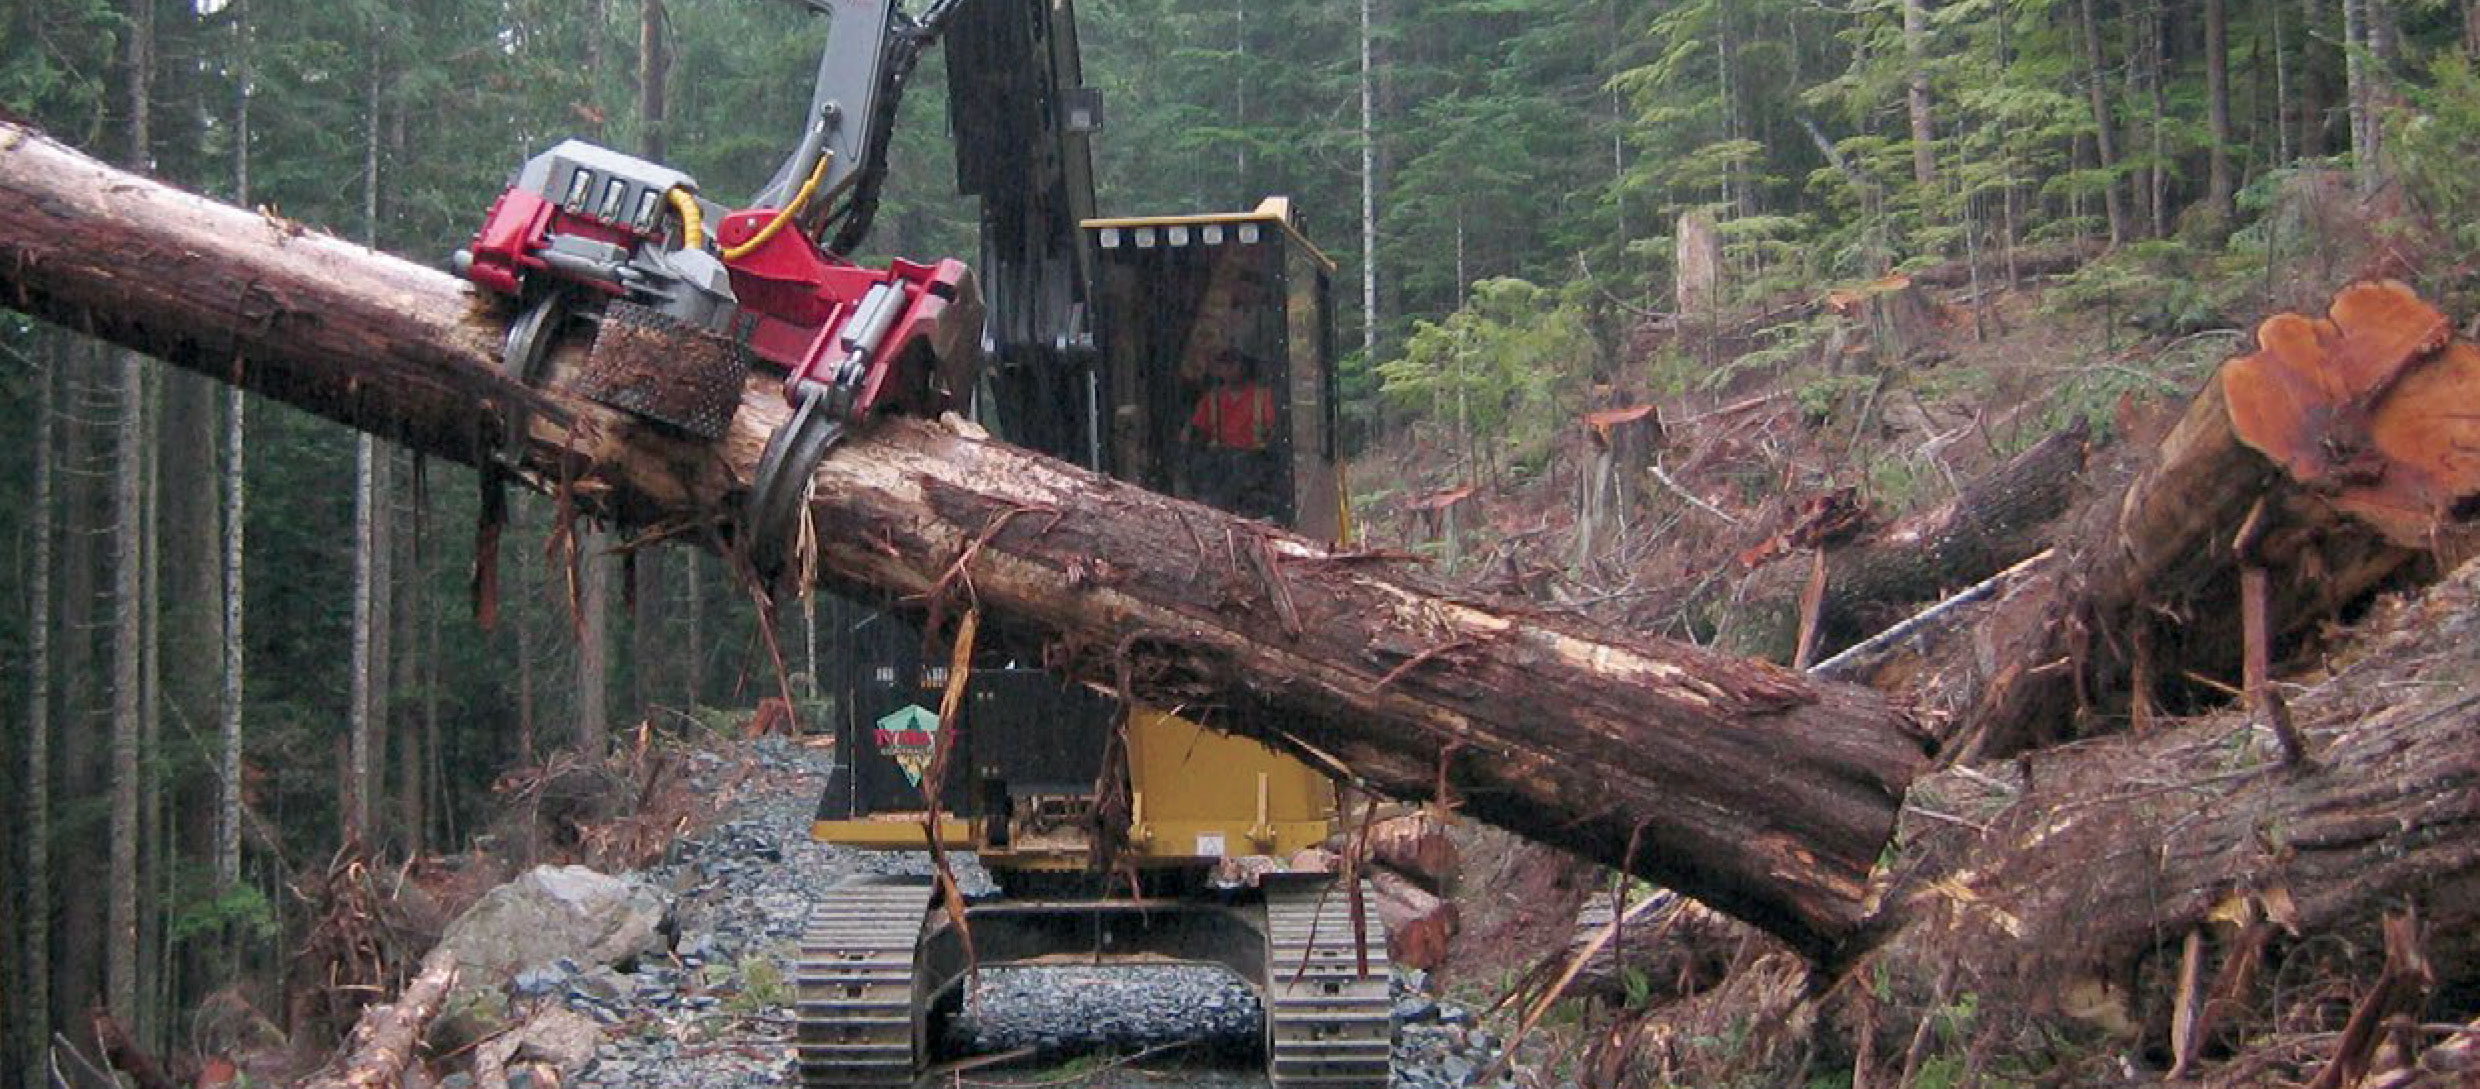 processoiri forestali log max